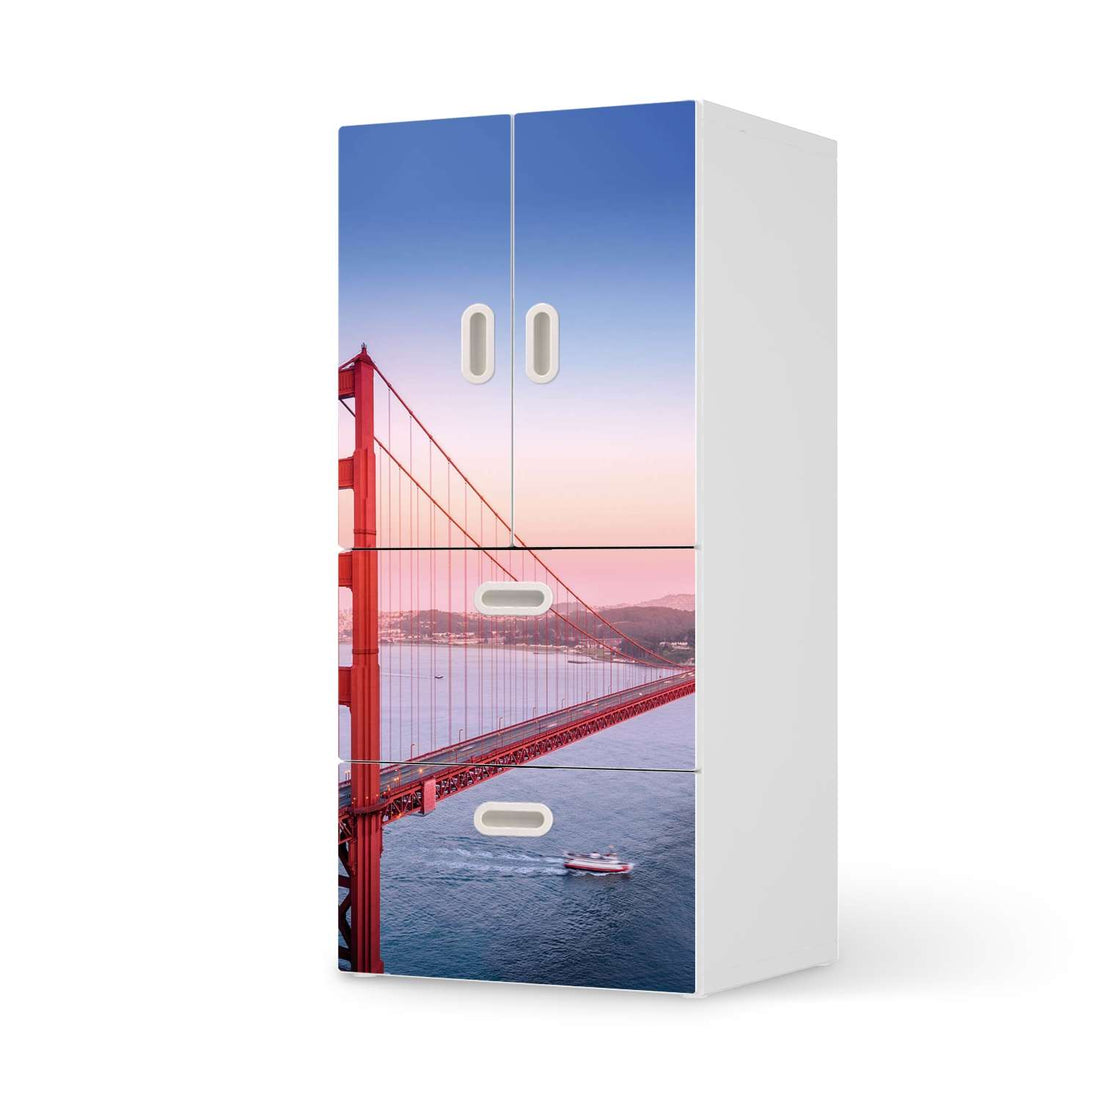 Möbelfolie Golden Gate - IKEA Stuva / Fritids kombiniert - 2 Schubladen und 2 kleine Türen  - weiss